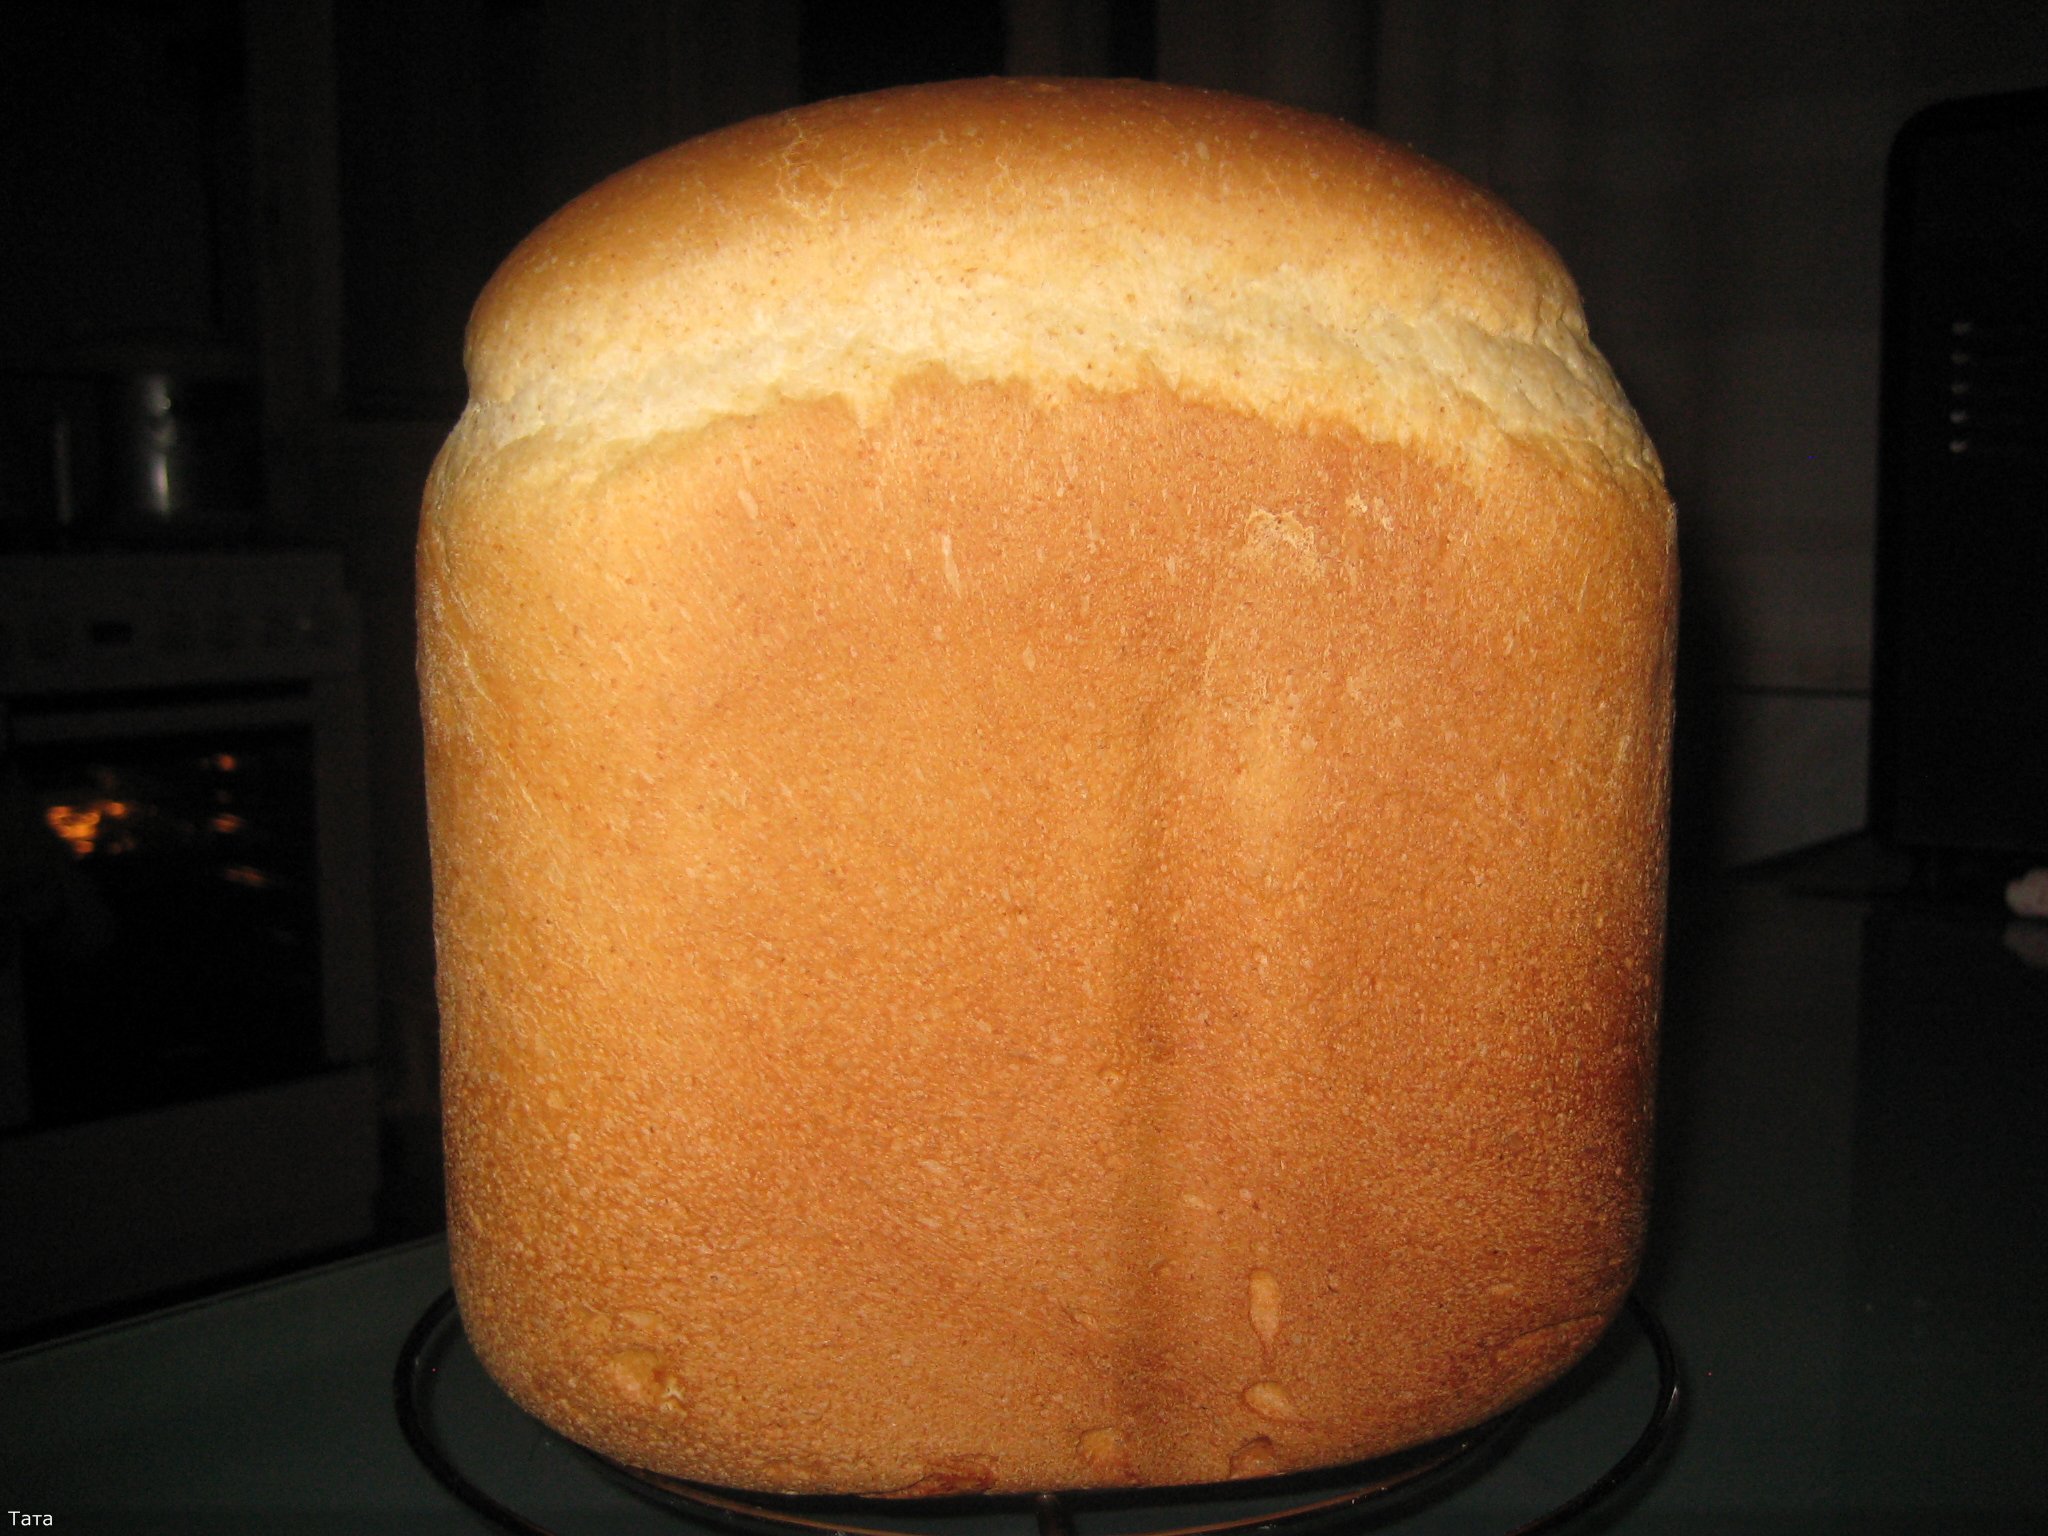 לחם מחמצת אפור בהיר (יצרנית לחם)